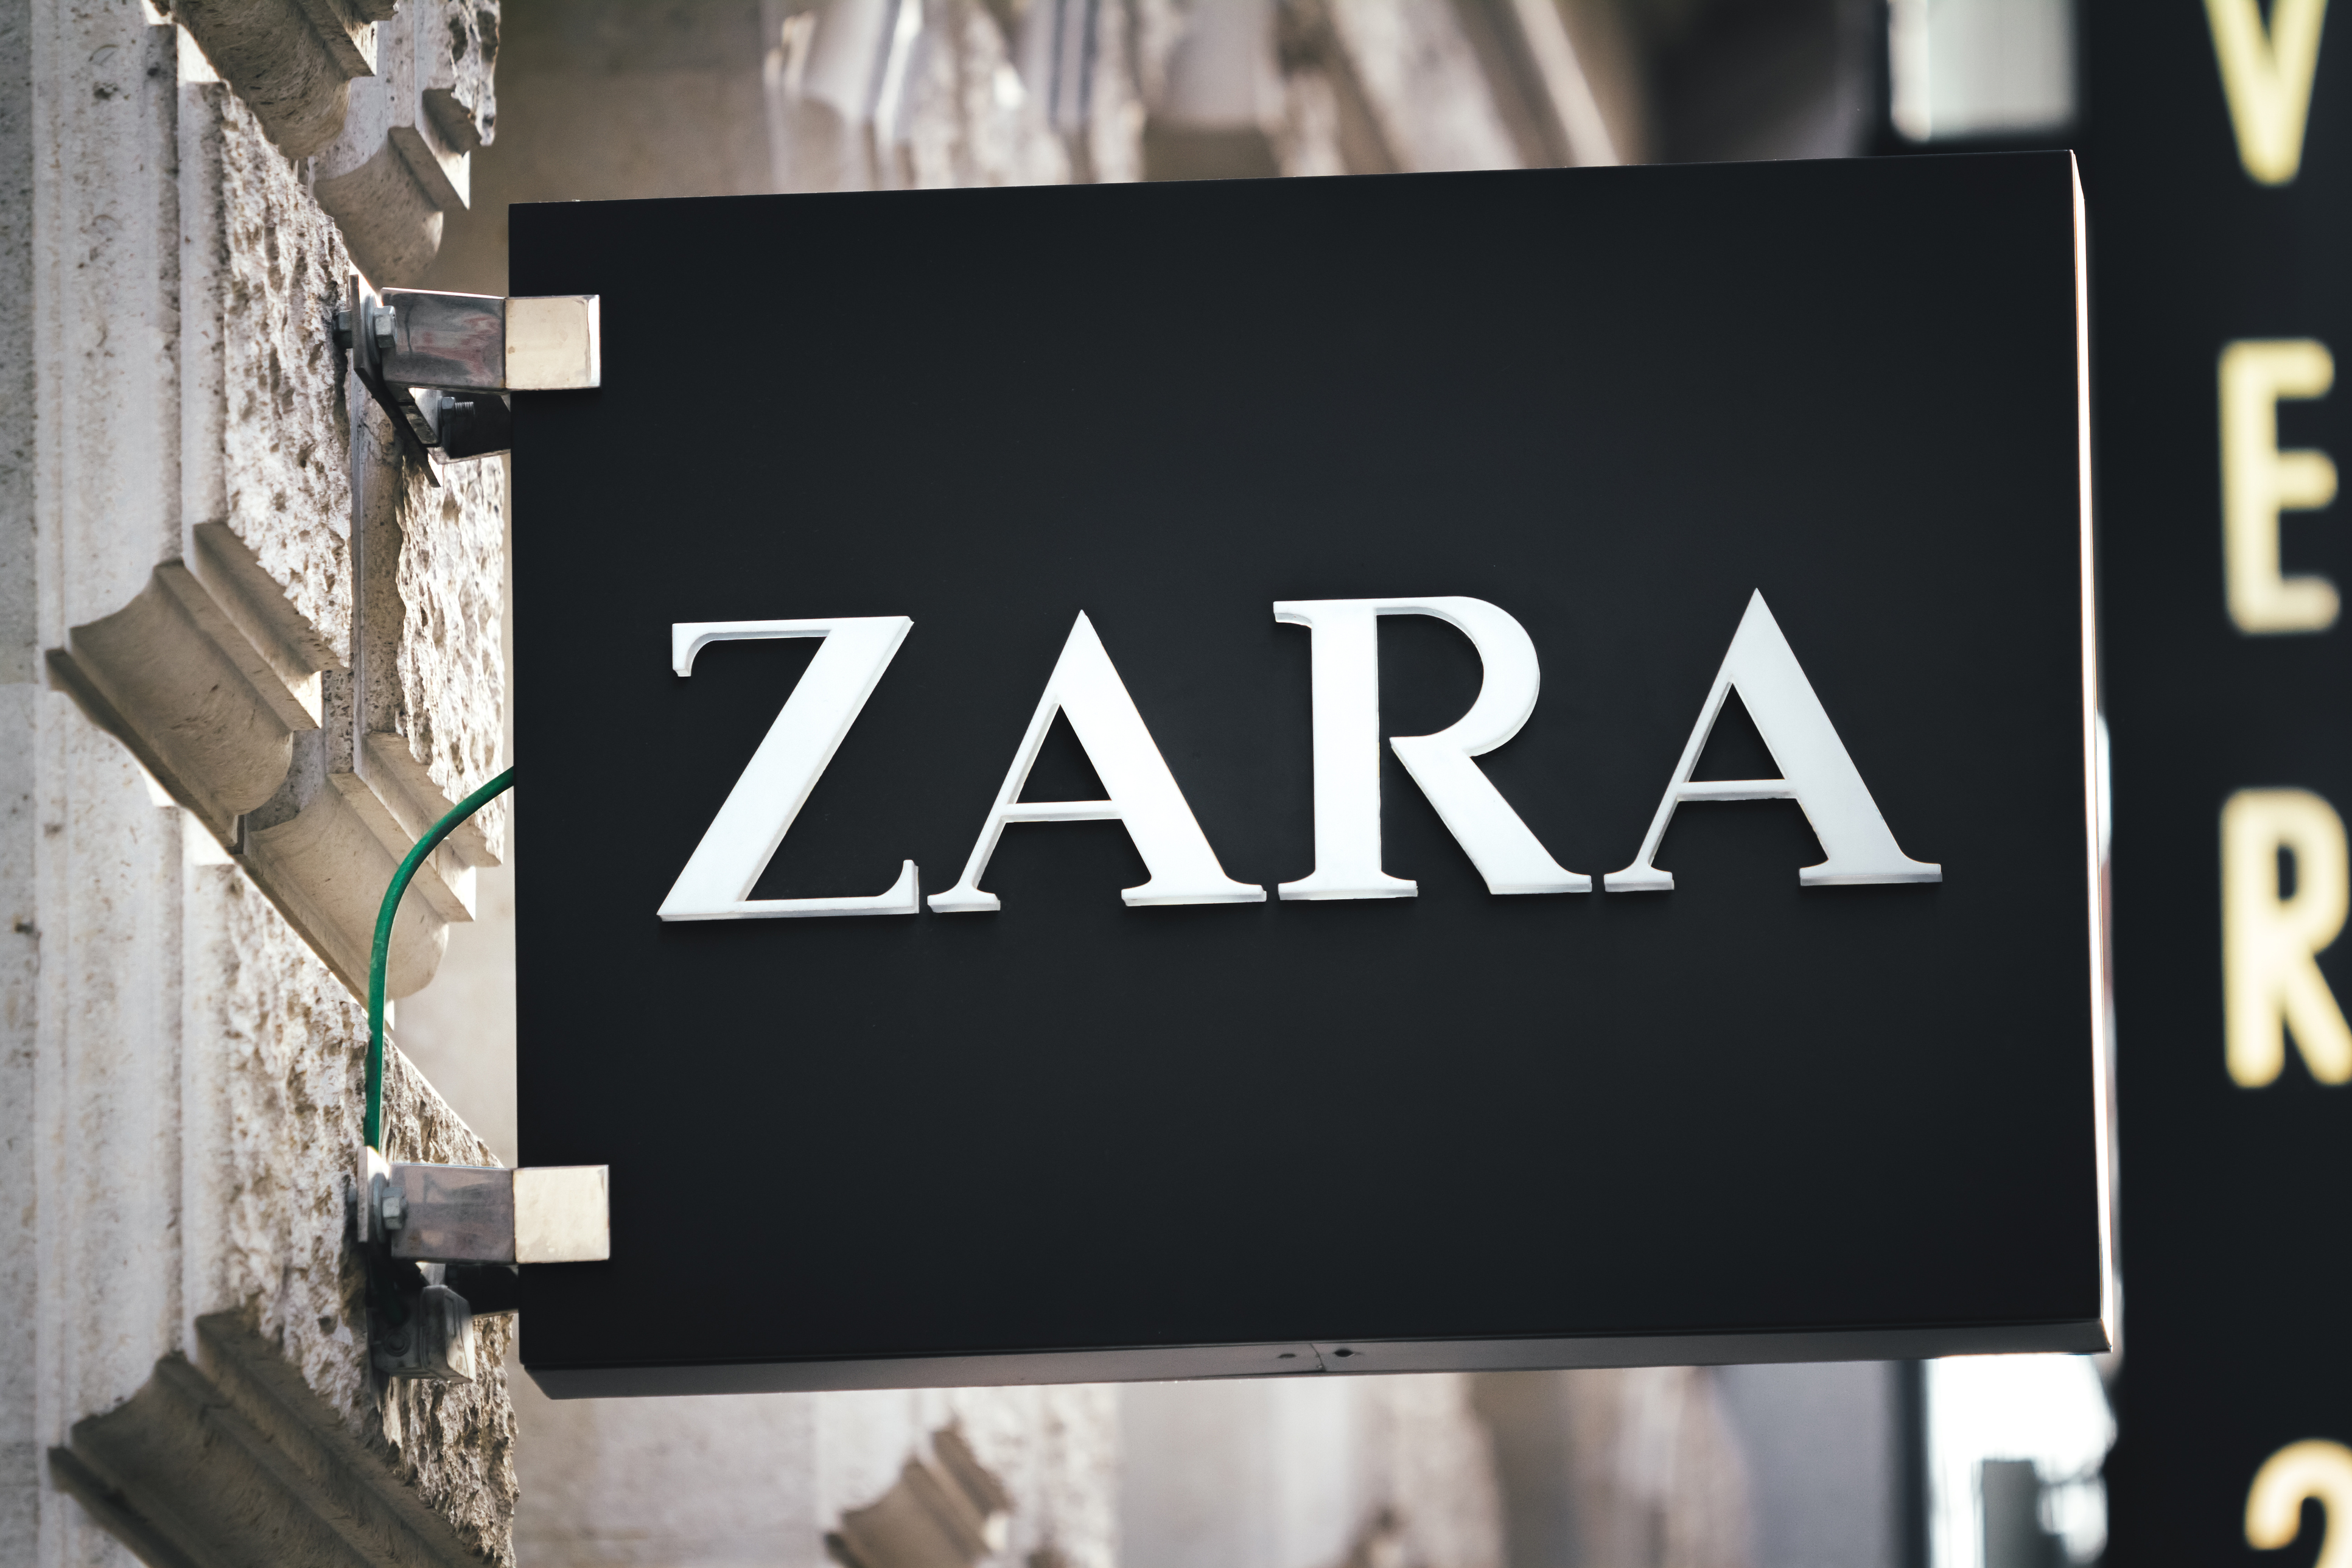 Zara Sign In Vienna